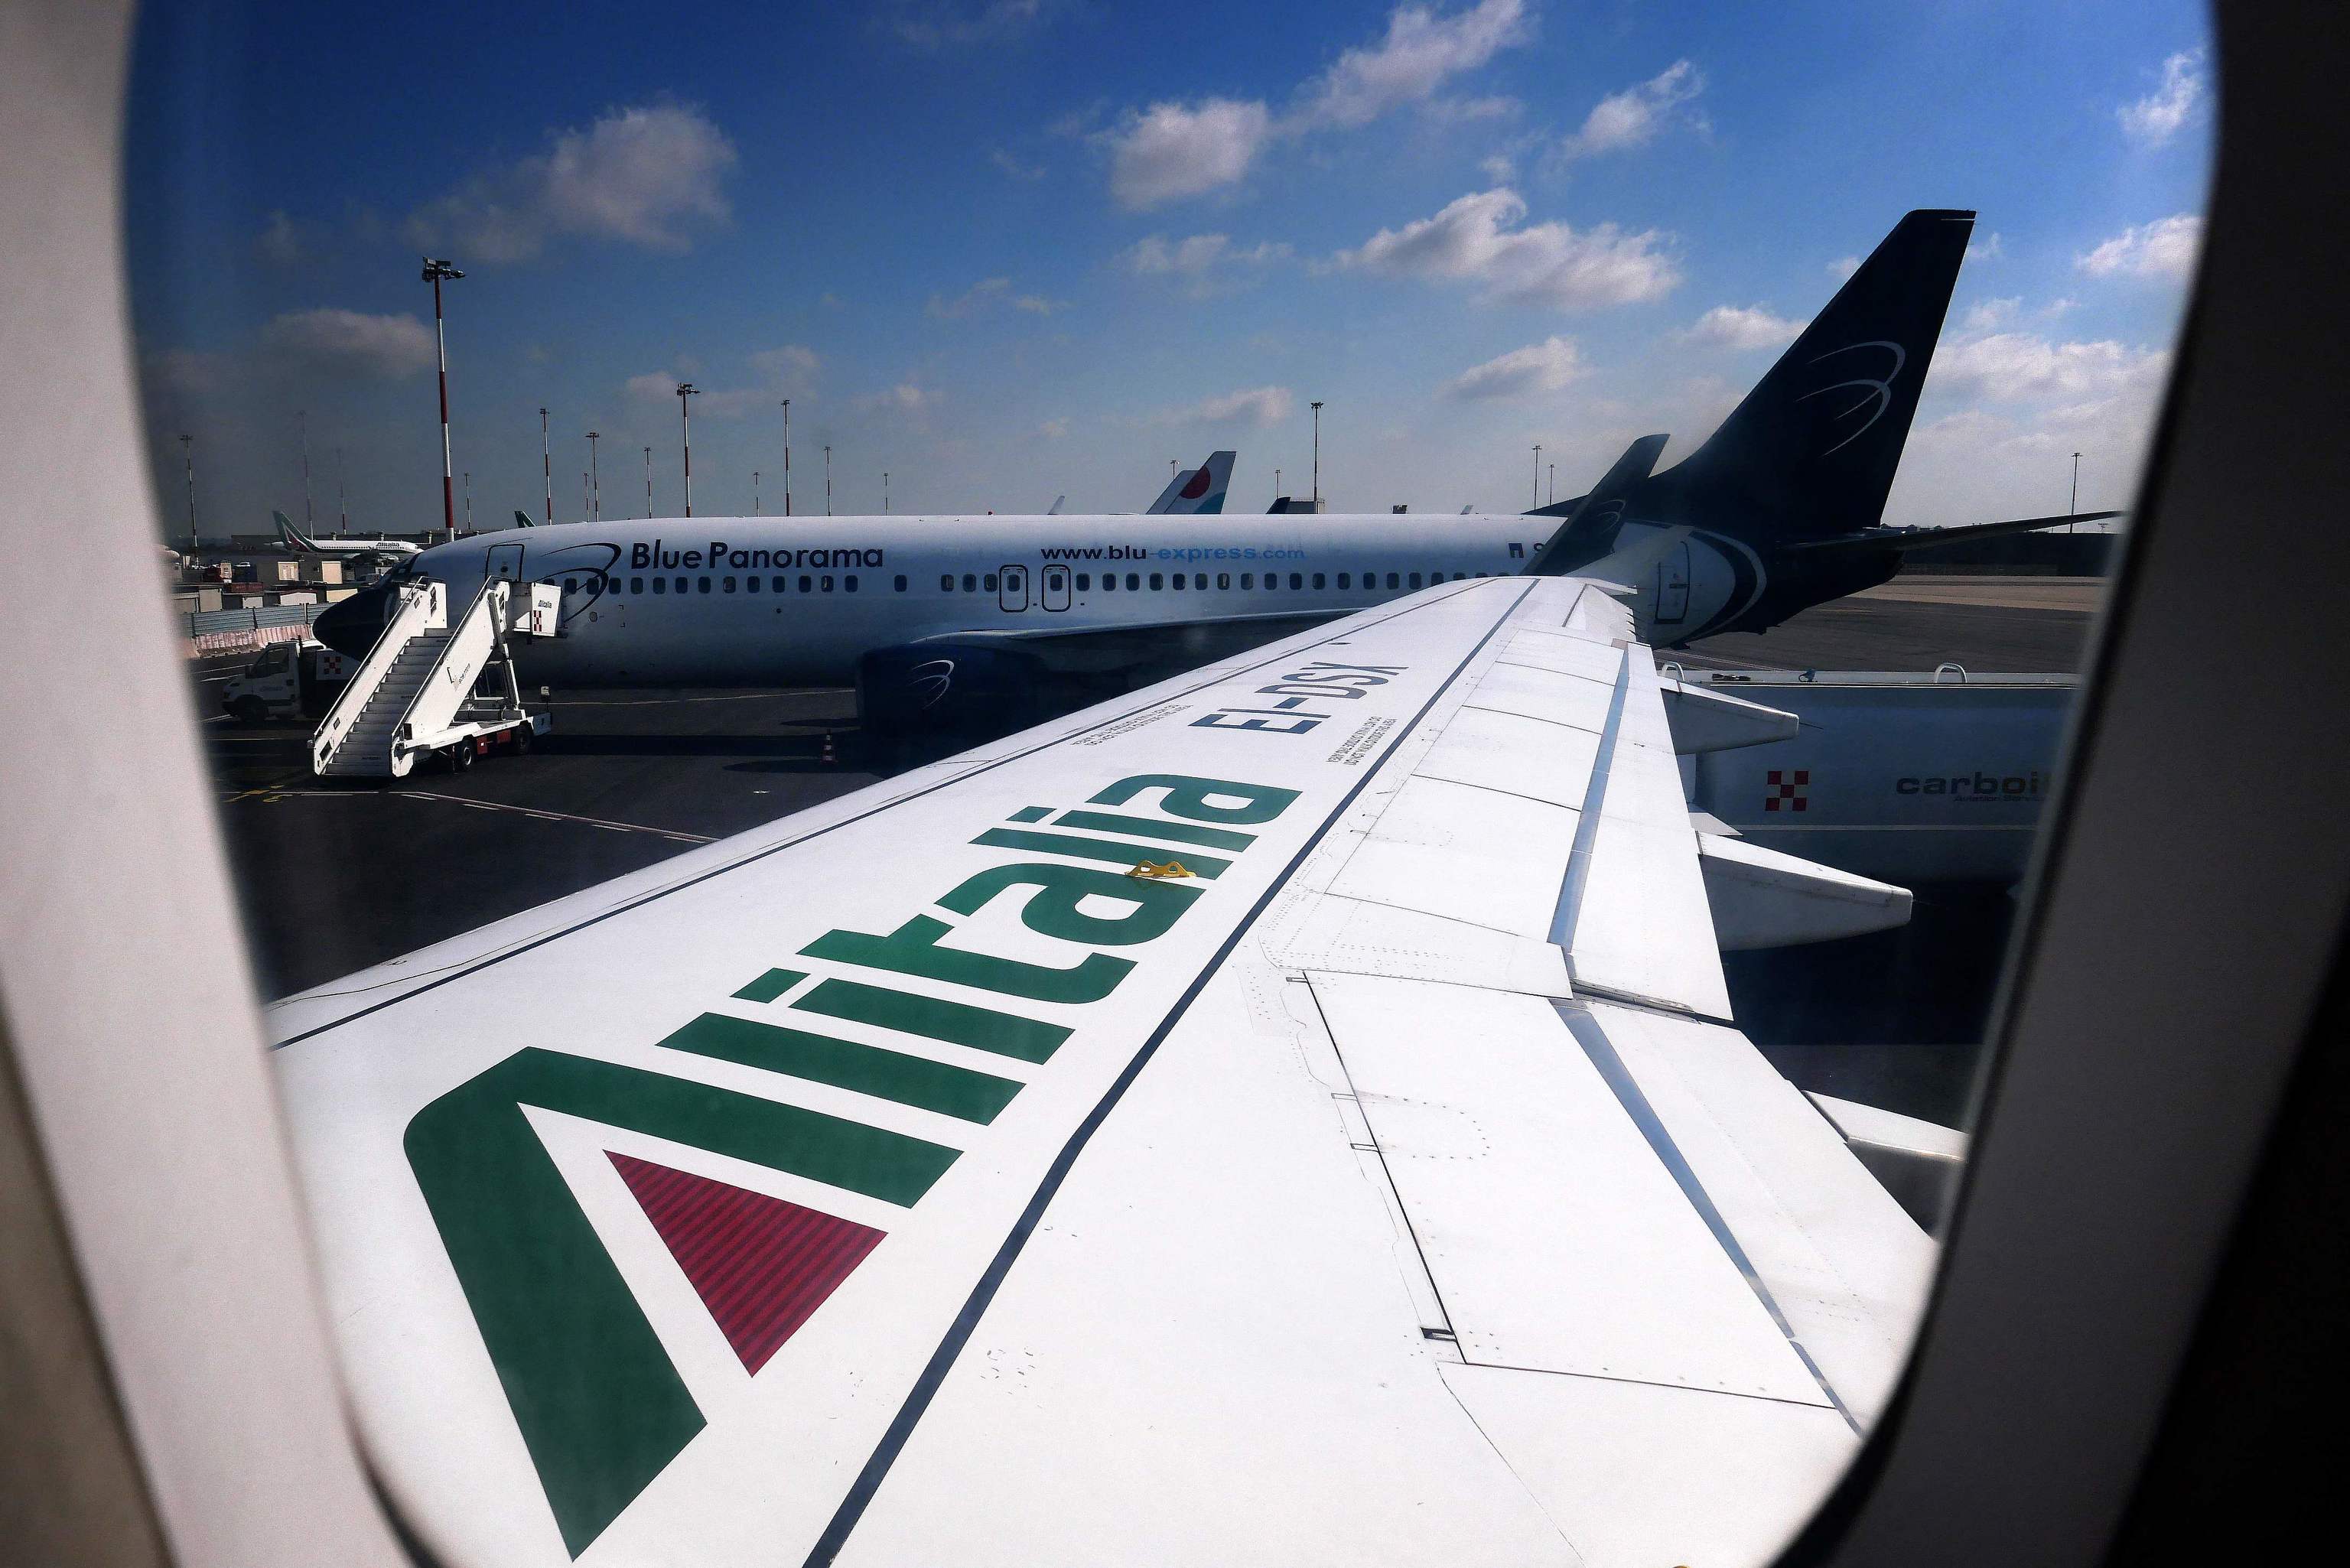 El logotipo de la aerolnea de bandera italiana Alitalia aparece en el ala de un Airbus A320 en el aeropuerto de Fiumicino de Roma.